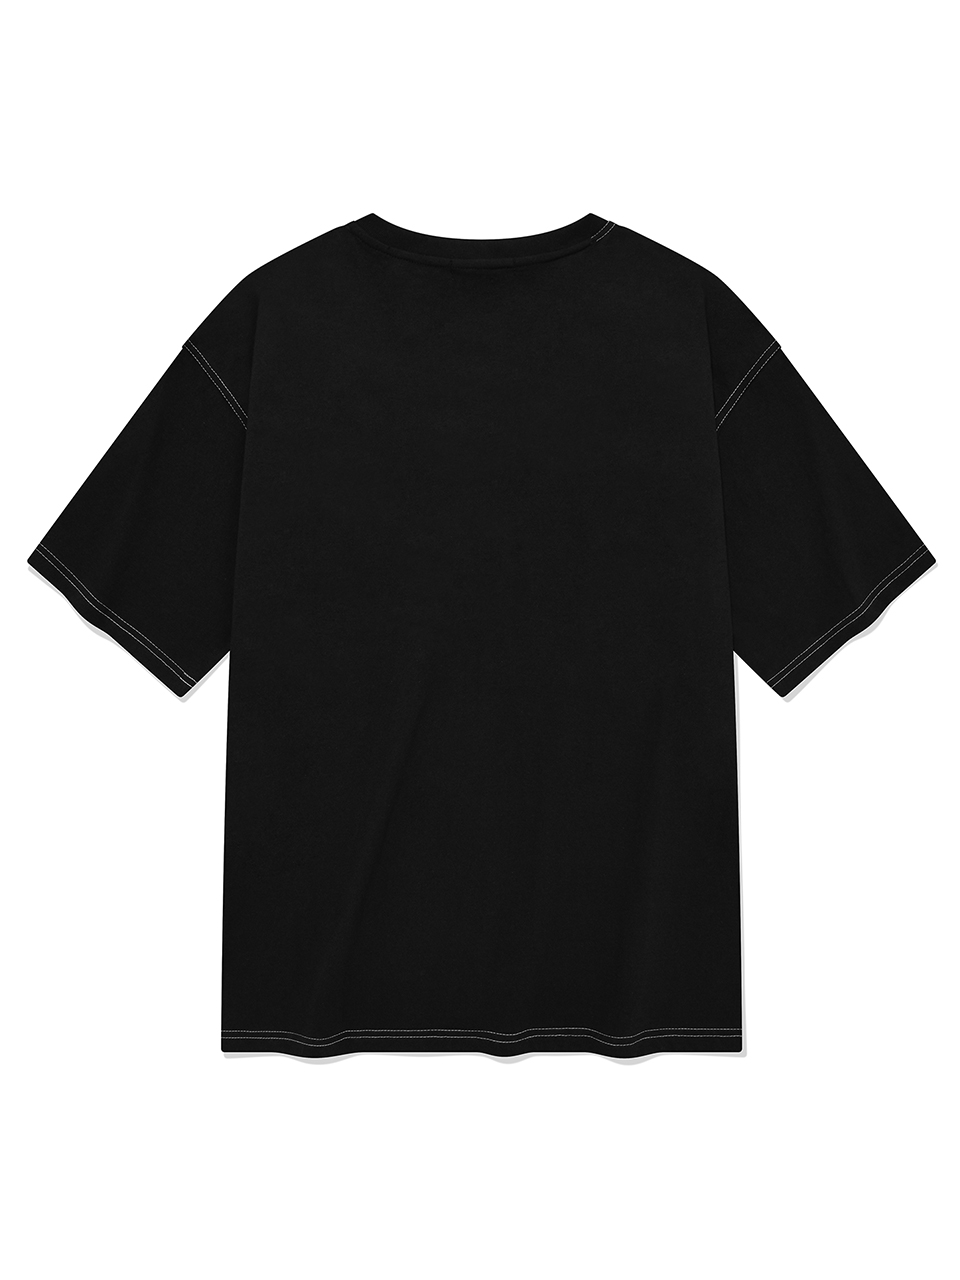 SP 아웃라인 스티치 브이넥 티셔츠-블랙